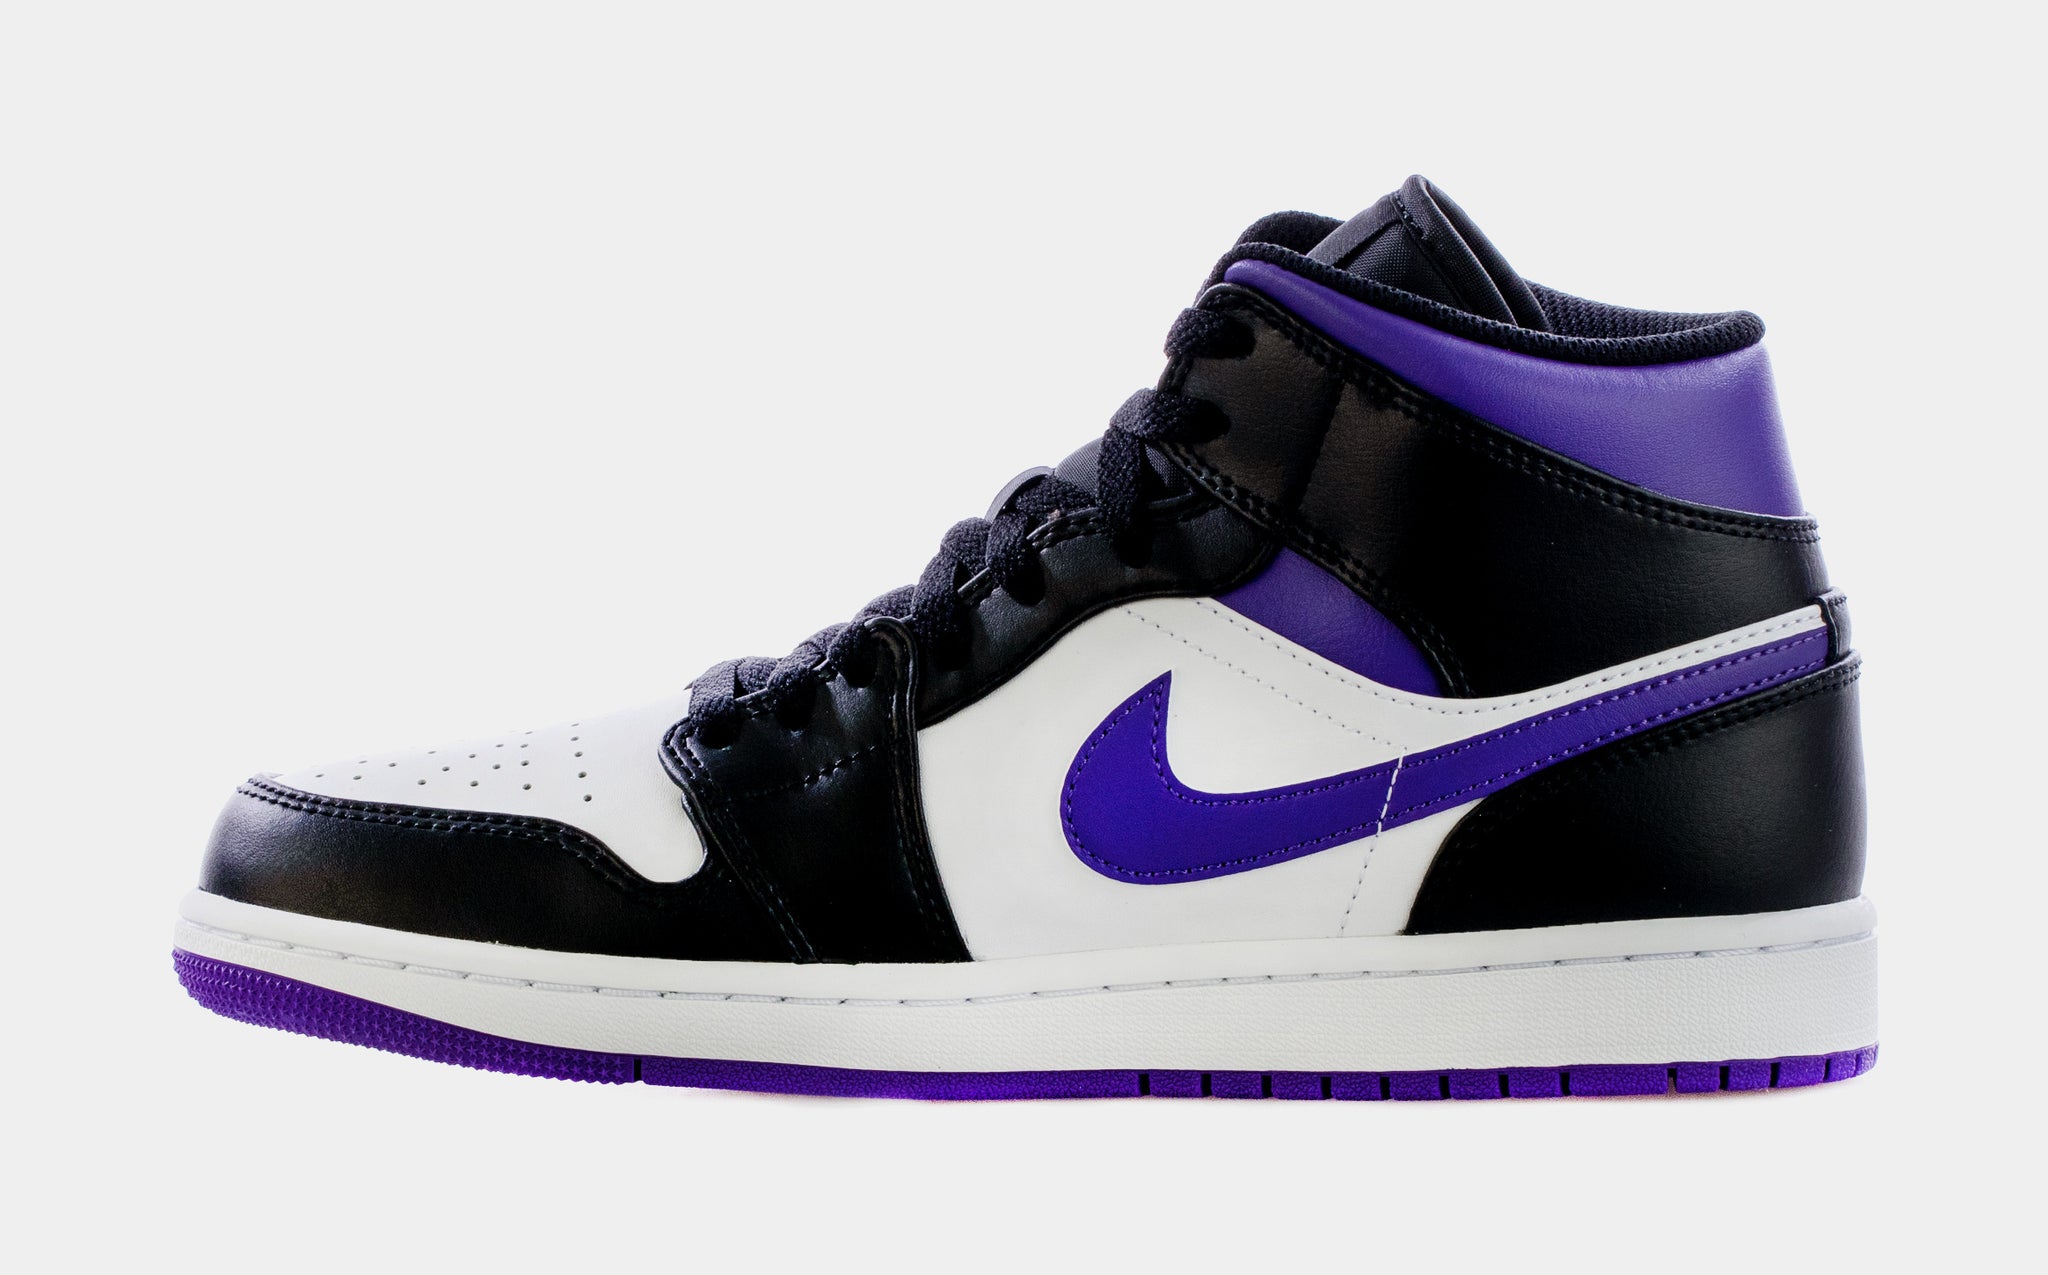 Air Jordan 1 Retro Mid Court Purple Mens Lifestyle Shoes (Black/Purple)